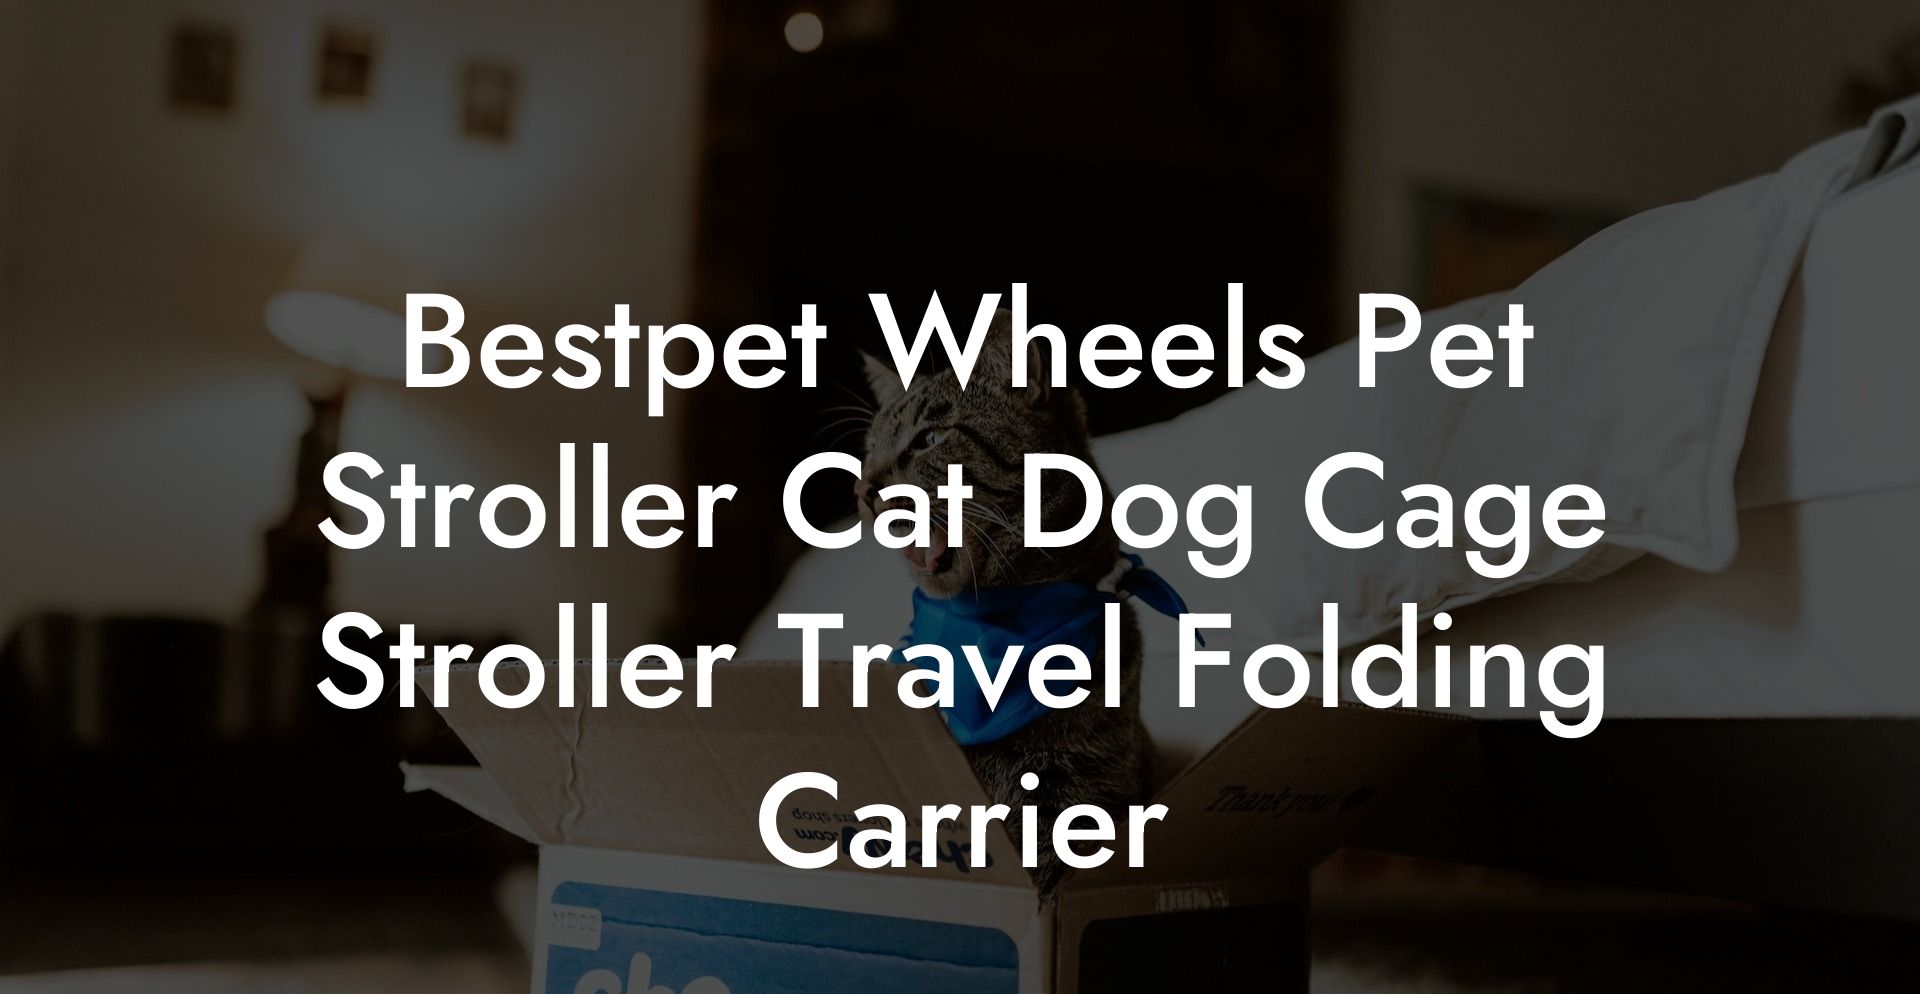 Bestpet Wheels Pet Stroller Cat Dog Cage Stroller Travel Folding Carrier